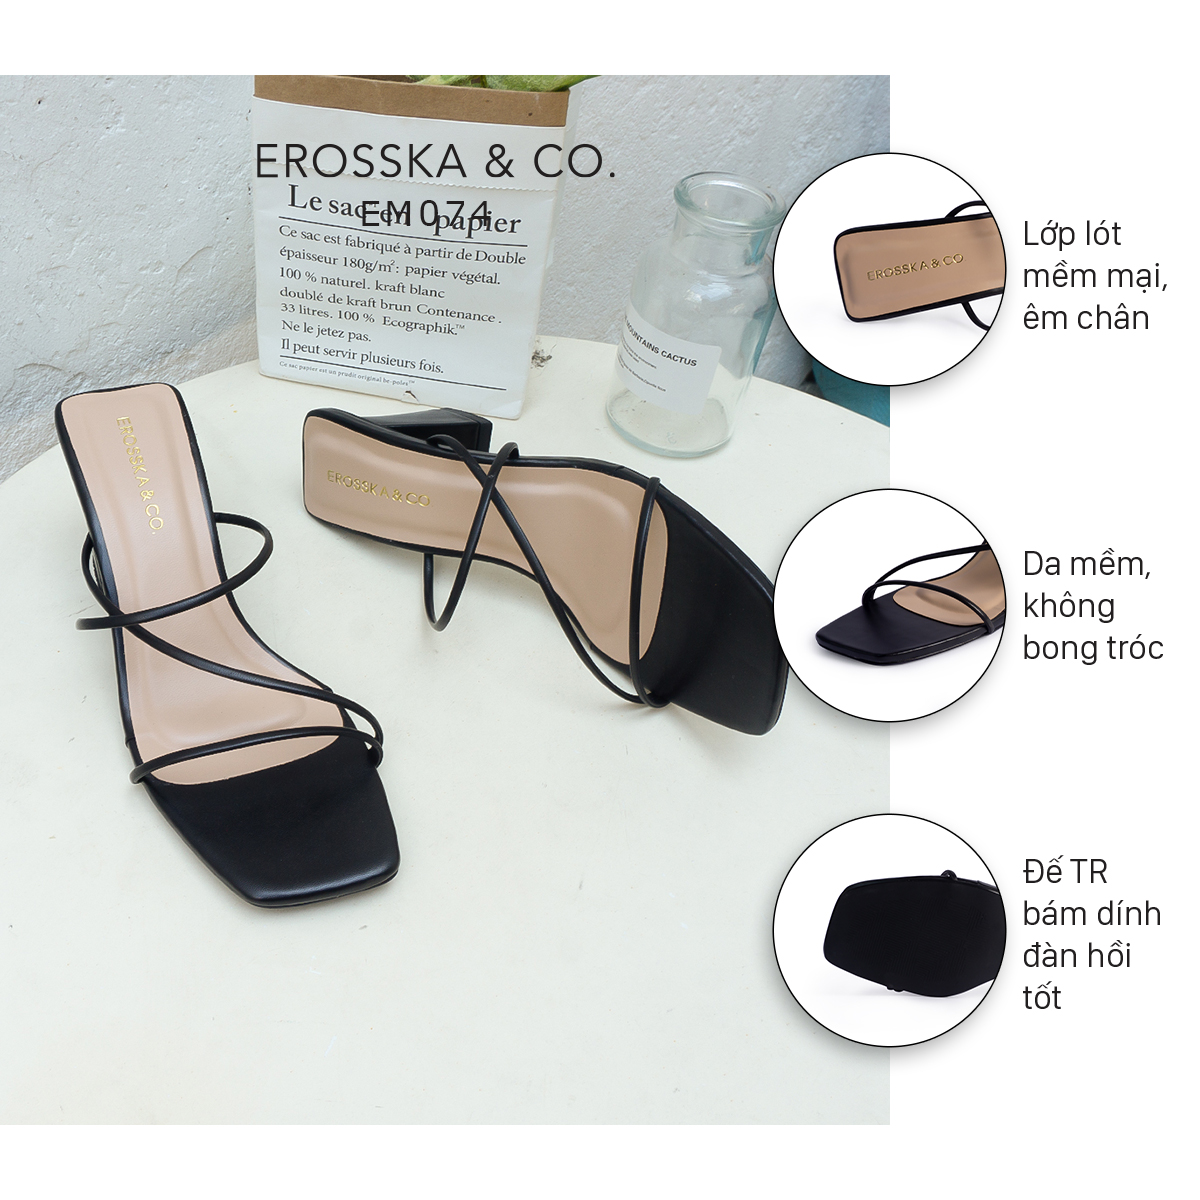 Dép cao gót Erosska mũi vuông phối dây kiểu dáng Hàn Quốc cao 7cm màu đen - EM074